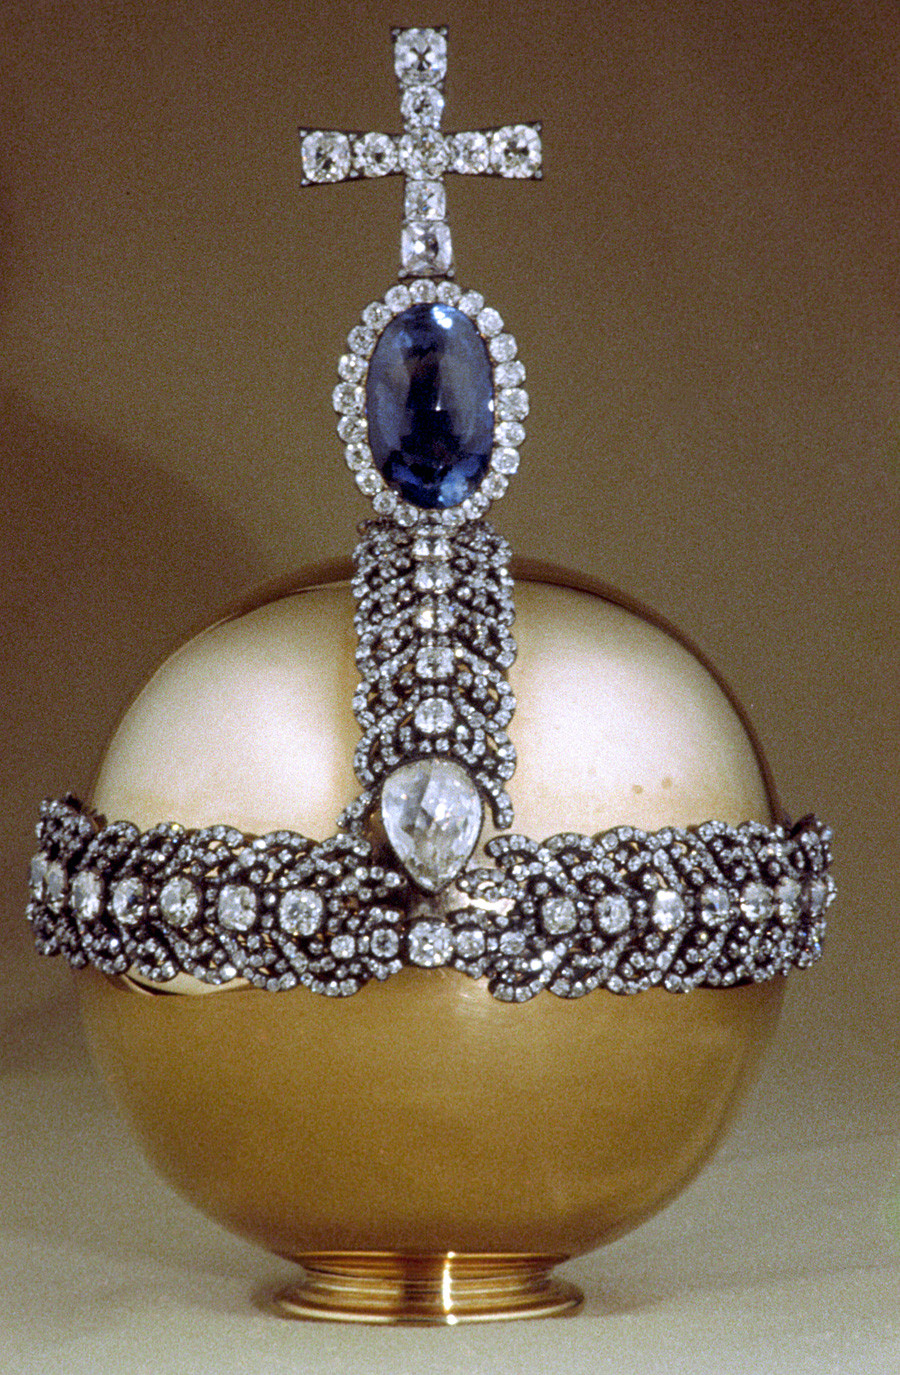 Ruska imperatorska deržava koju je 1762. napravio draguljar Ekart, a 1984. su je restaurirali Ivanov i Aleksahin. Crveno zlato. Križ od brilijanata stoji na Cejlonskom safiru. Dijamantni fond, Moskovski kremlj.

